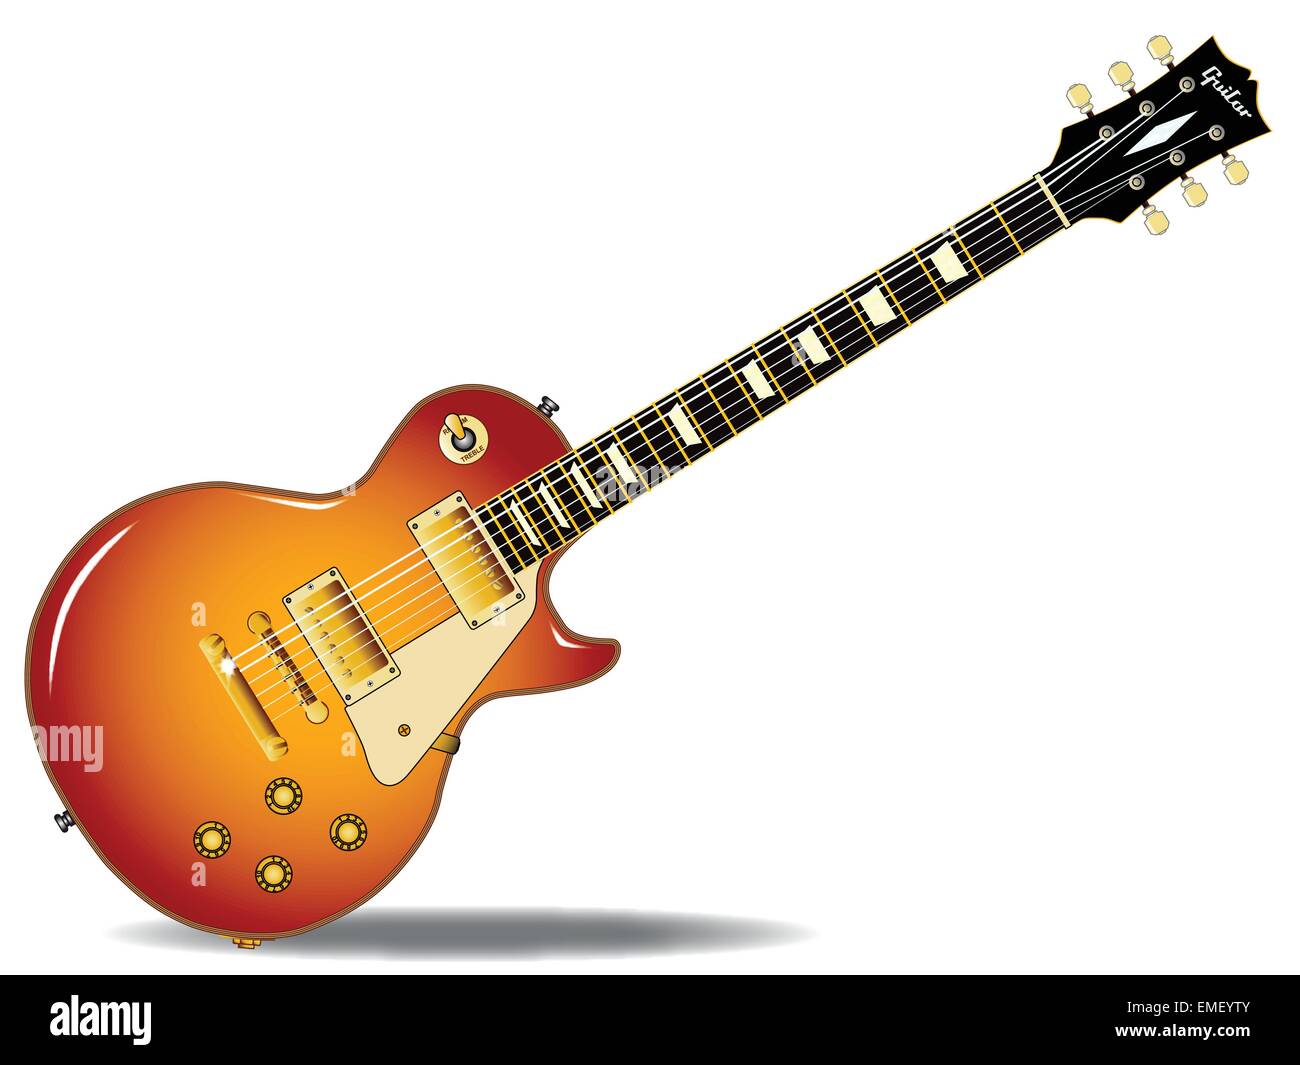 Cherry sunburst guitare Illustration de Vecteur